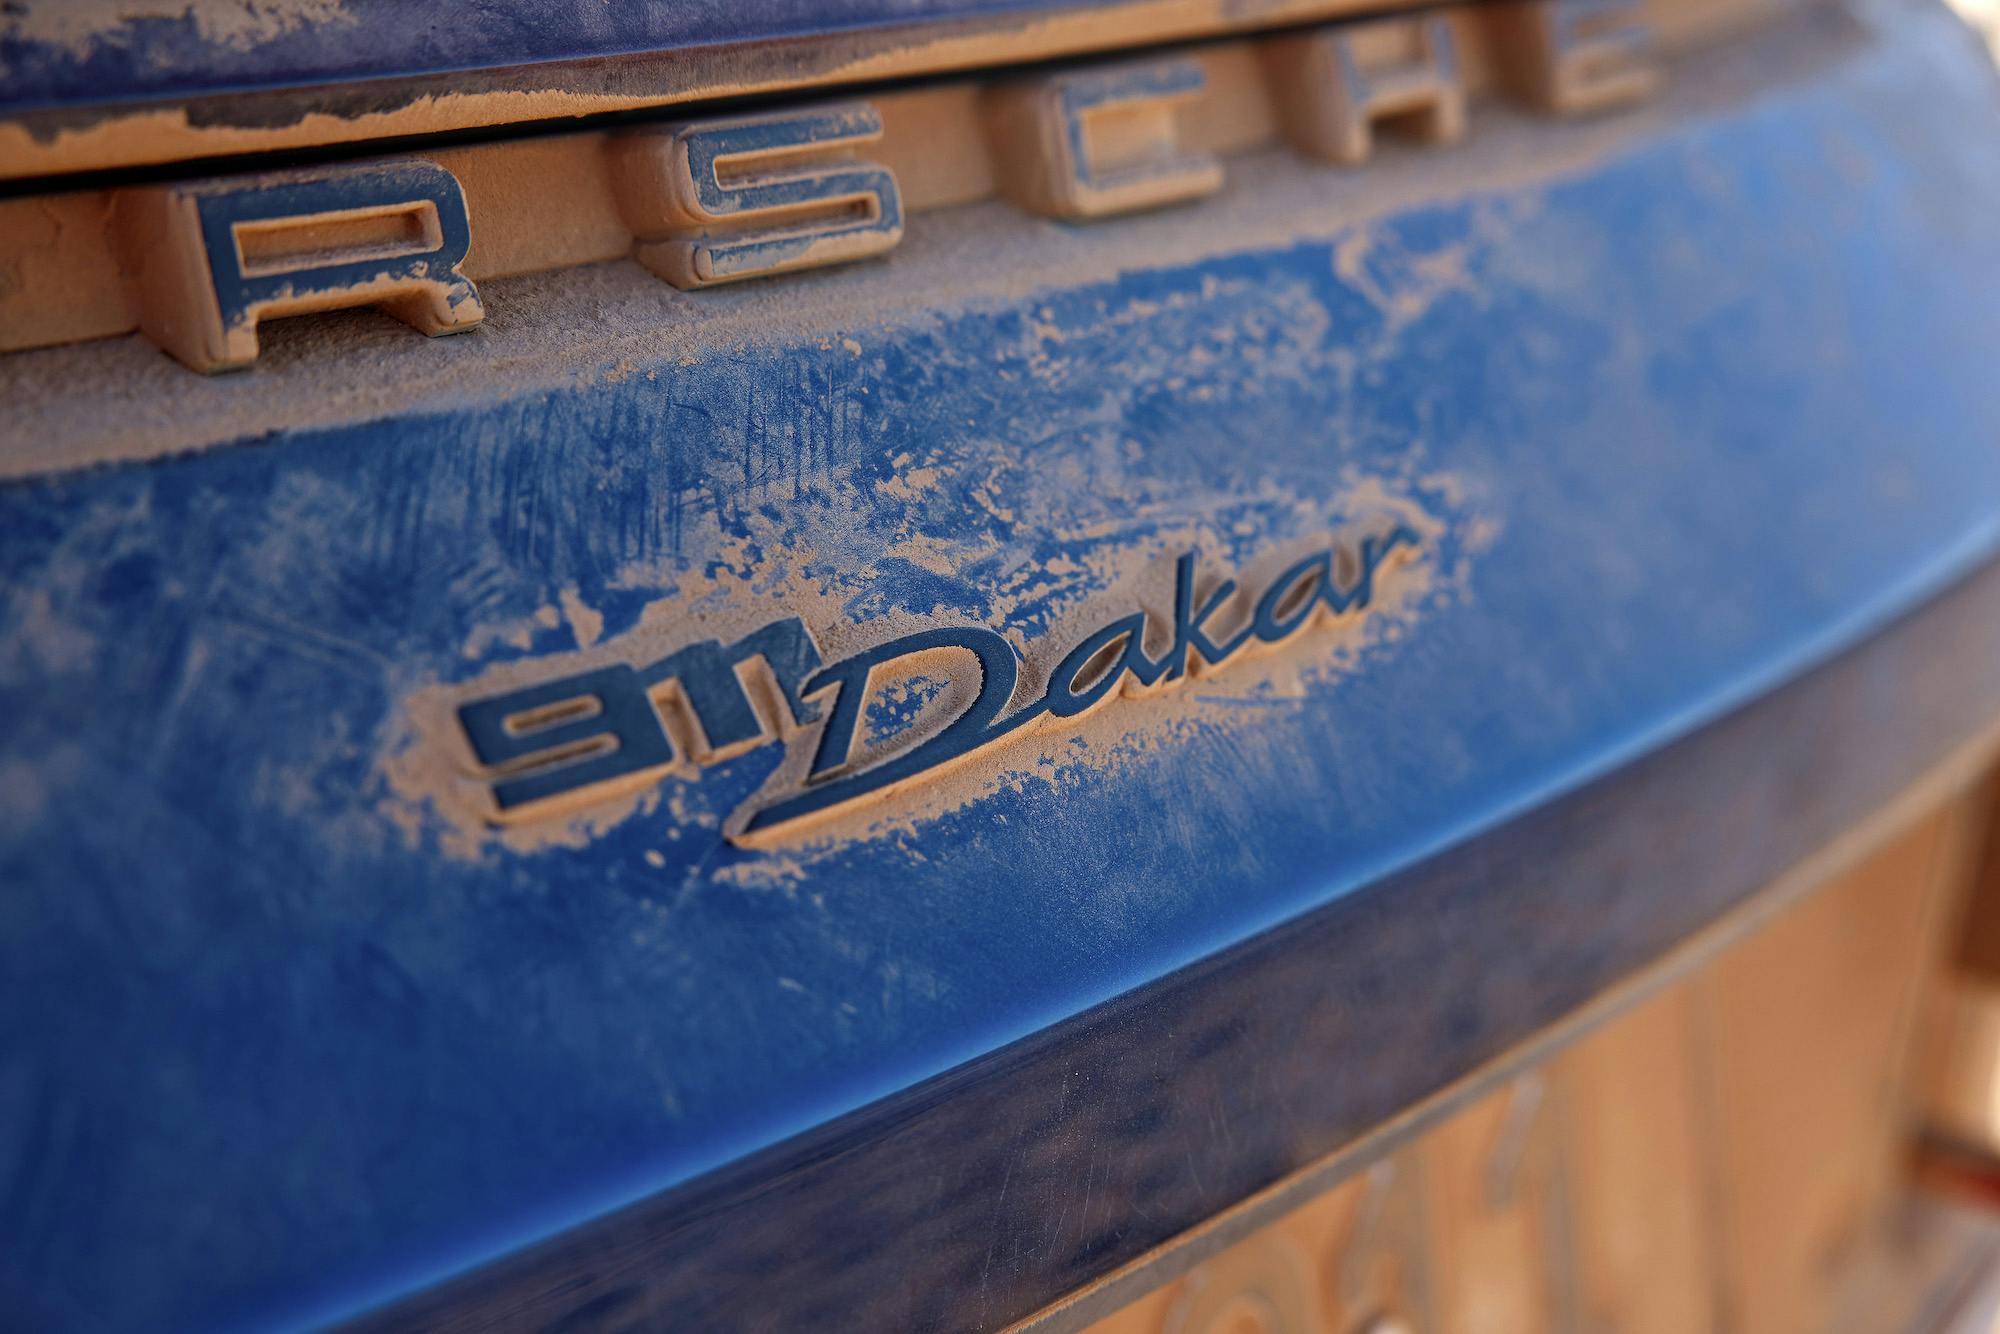 Porsche 911 Dakar badge dirt detail